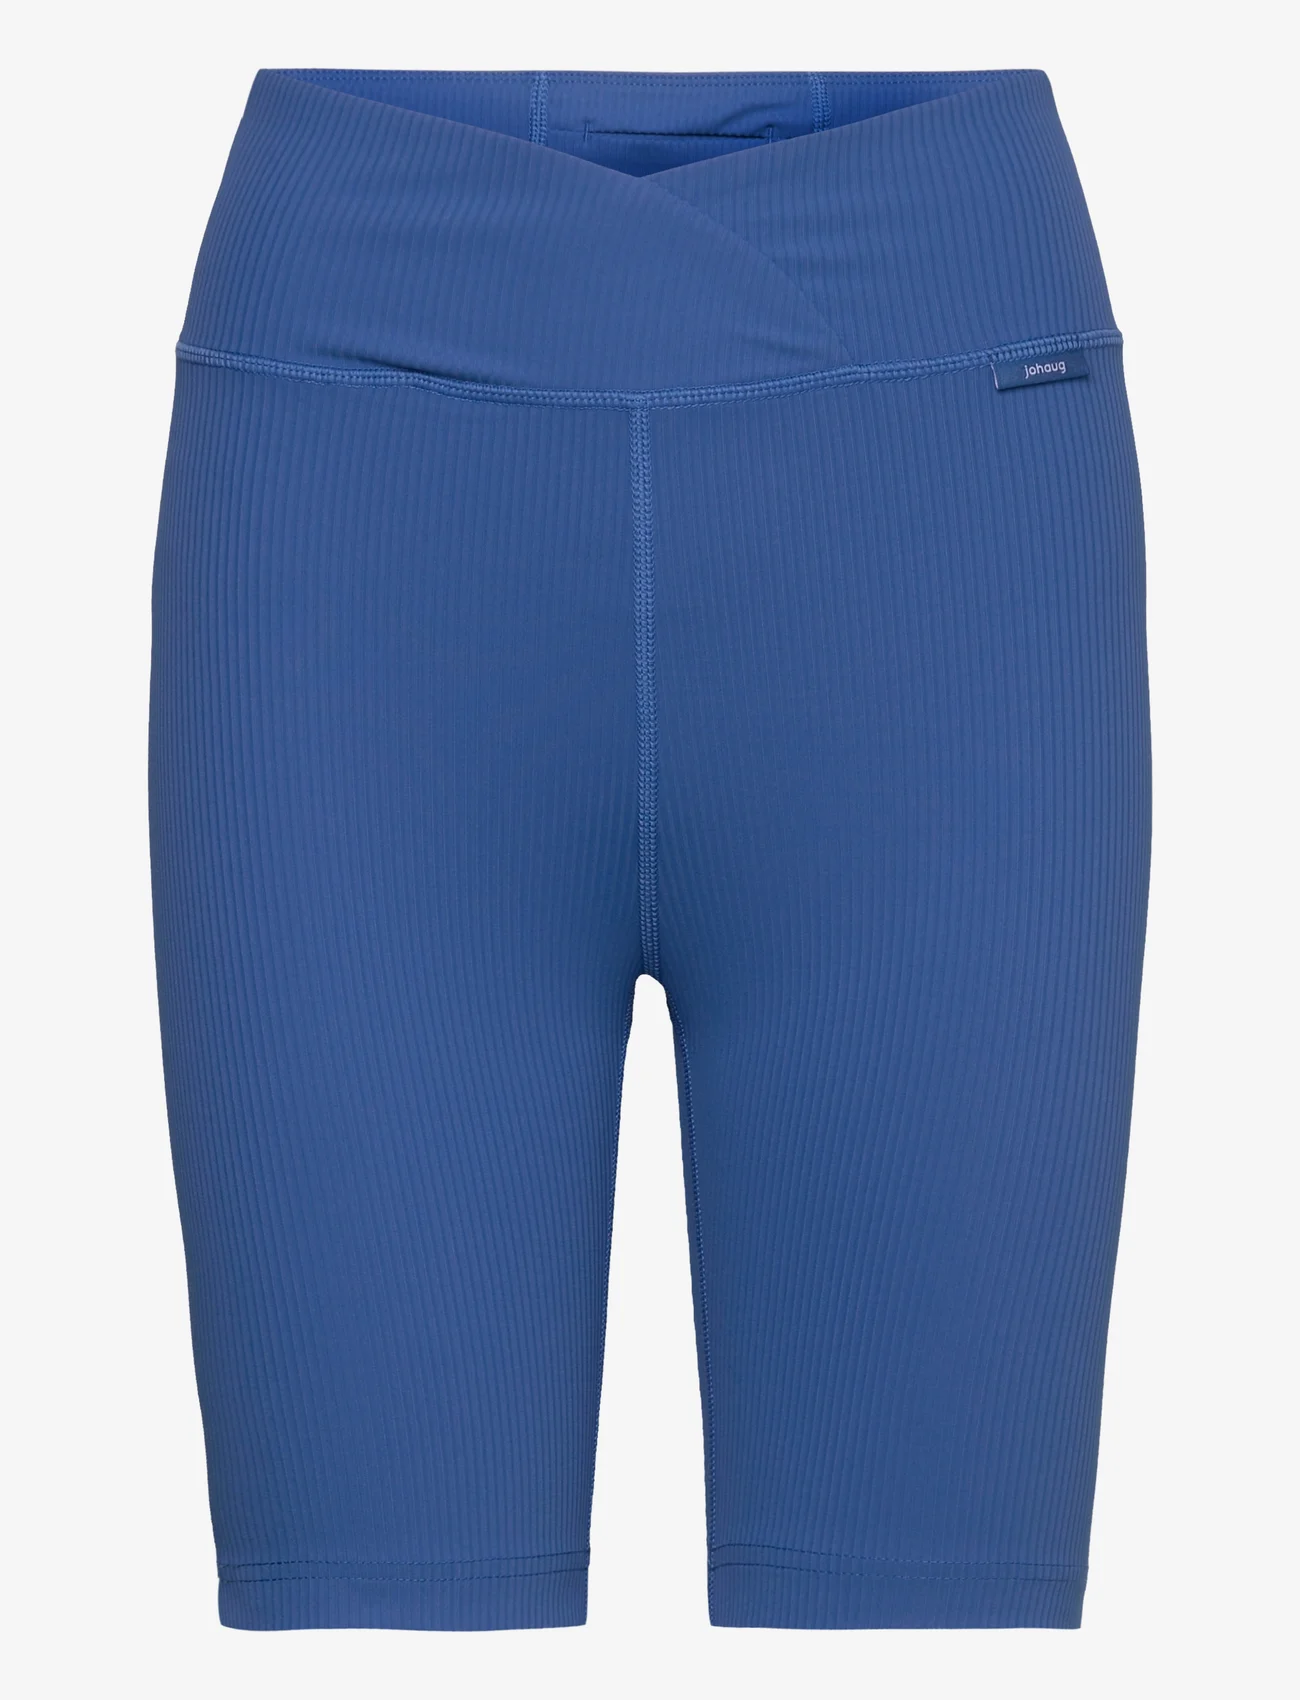 Johaug - Rupture Rib Bikelenght - trening shorts - blue - 0